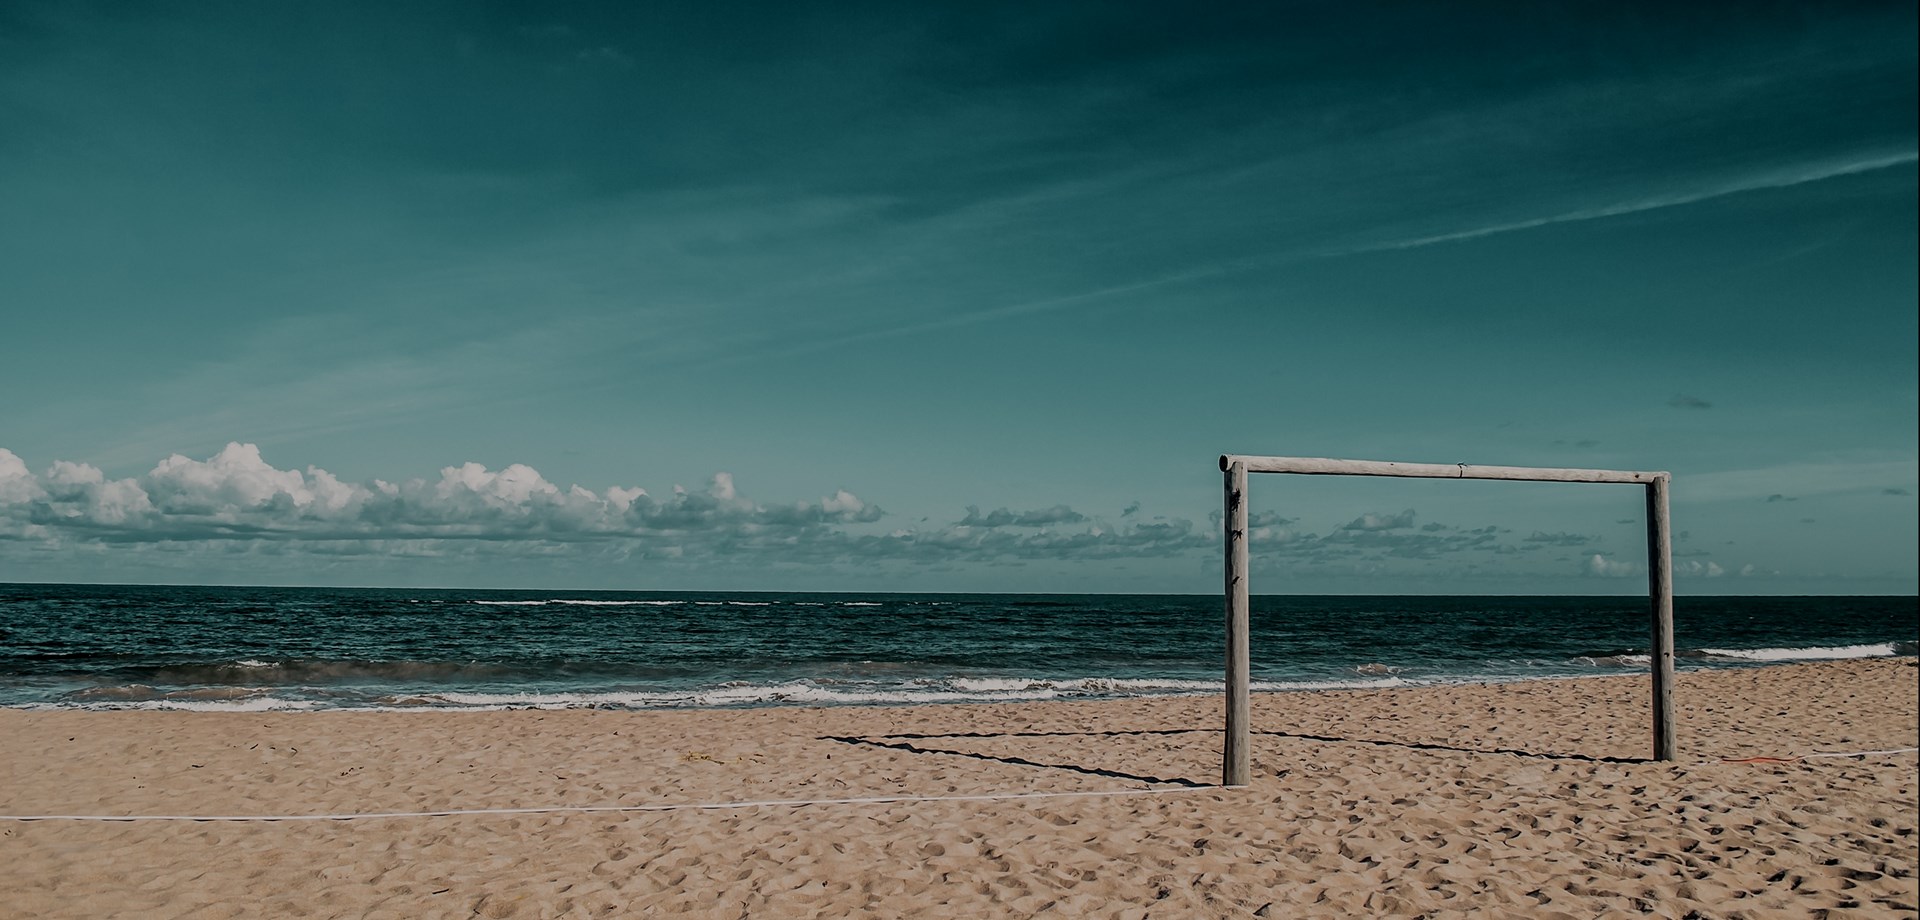 Le Portugal a 5 plages distinguées par The Guardian